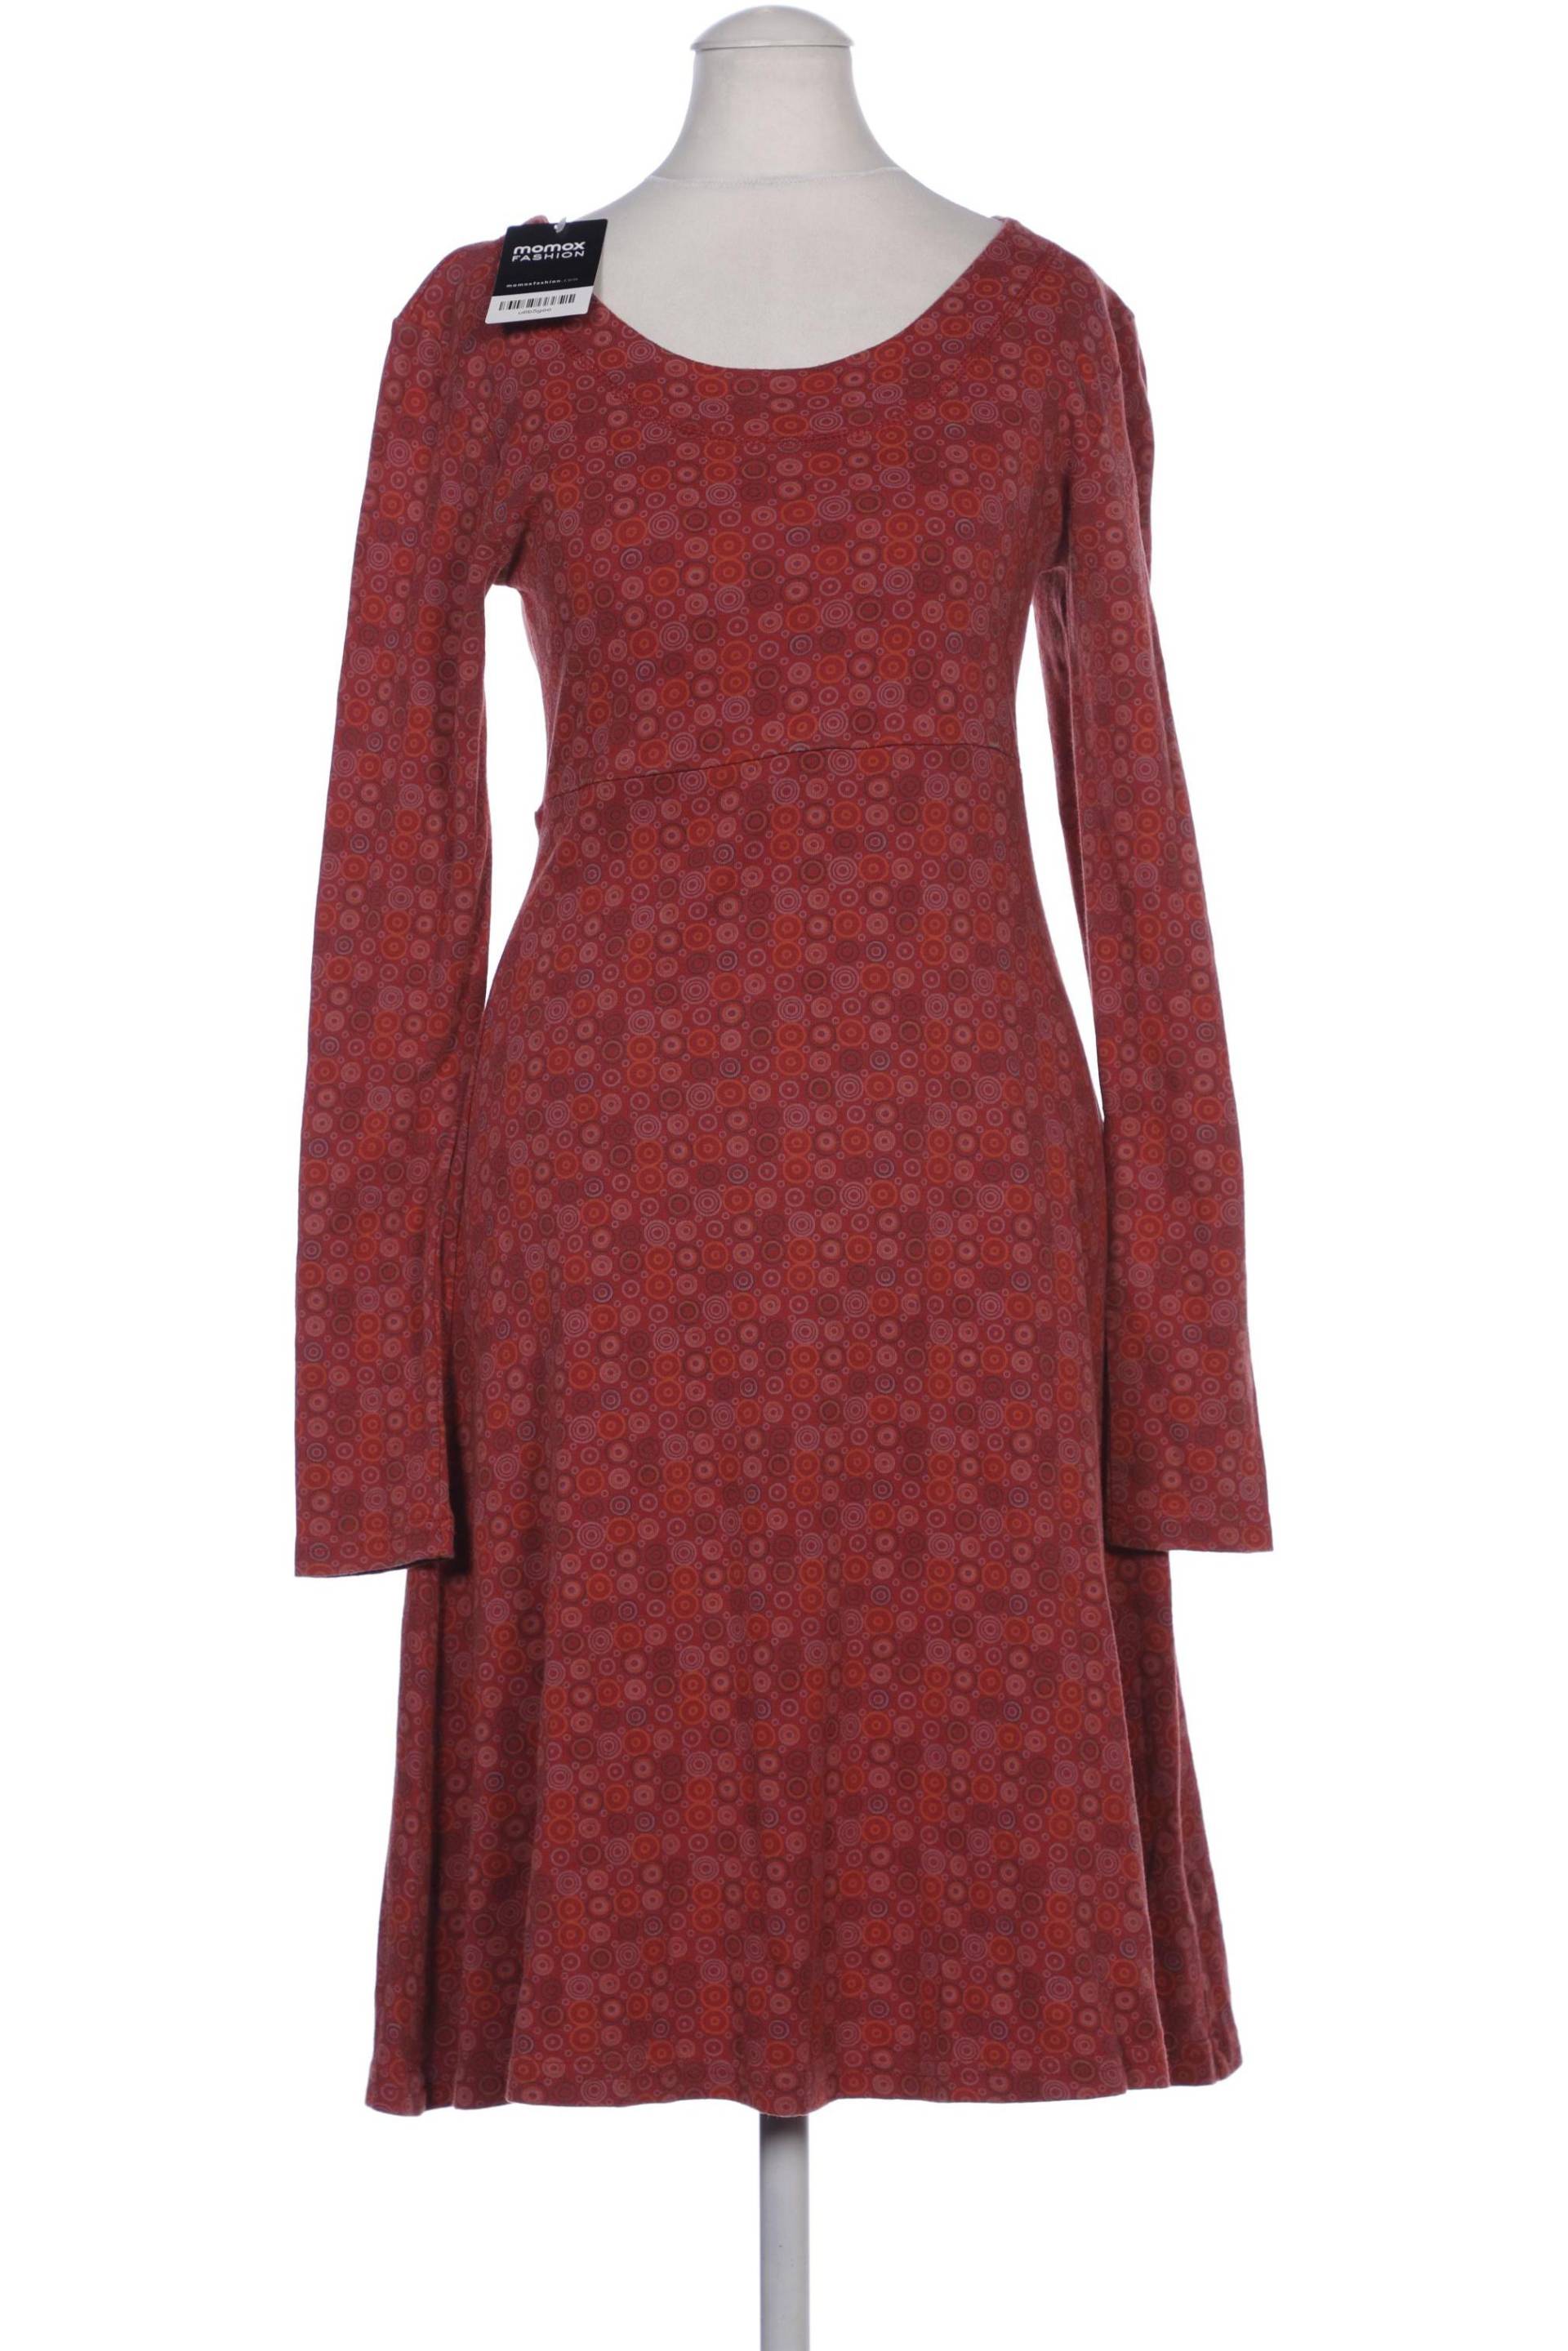 Maas Damen Kleid, rot, Gr. 36 von Maas